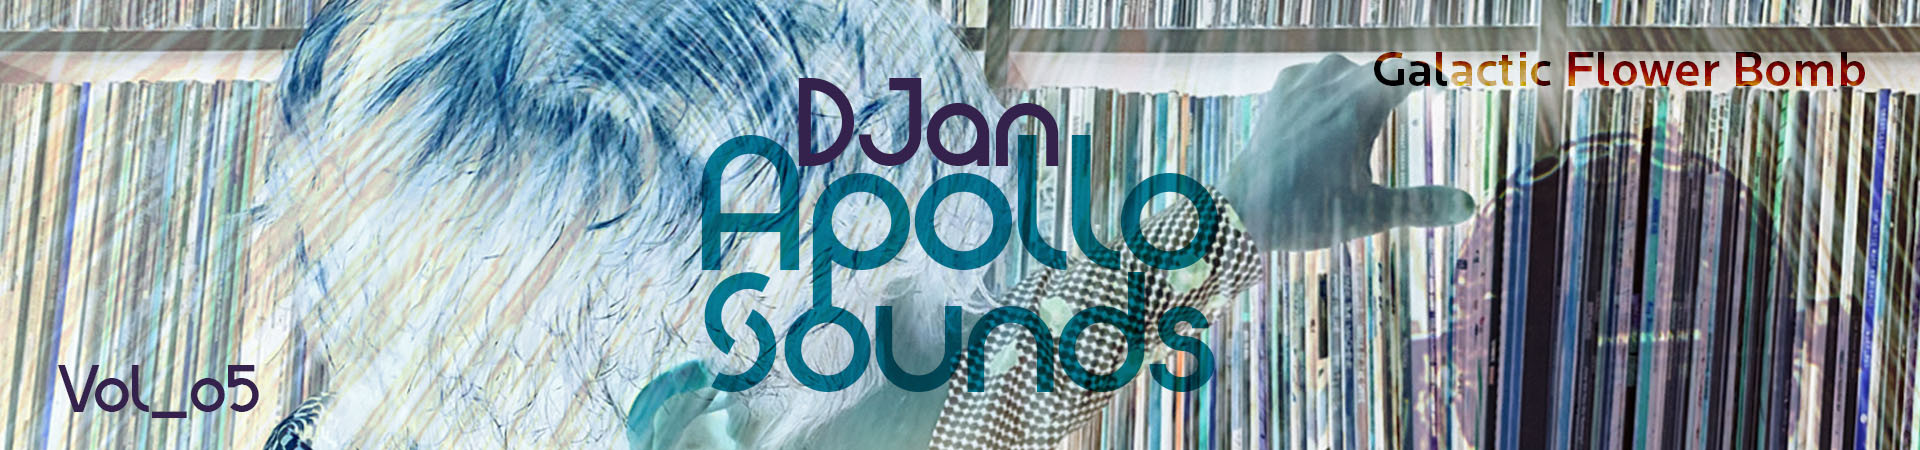 ApolloSounds Header 05